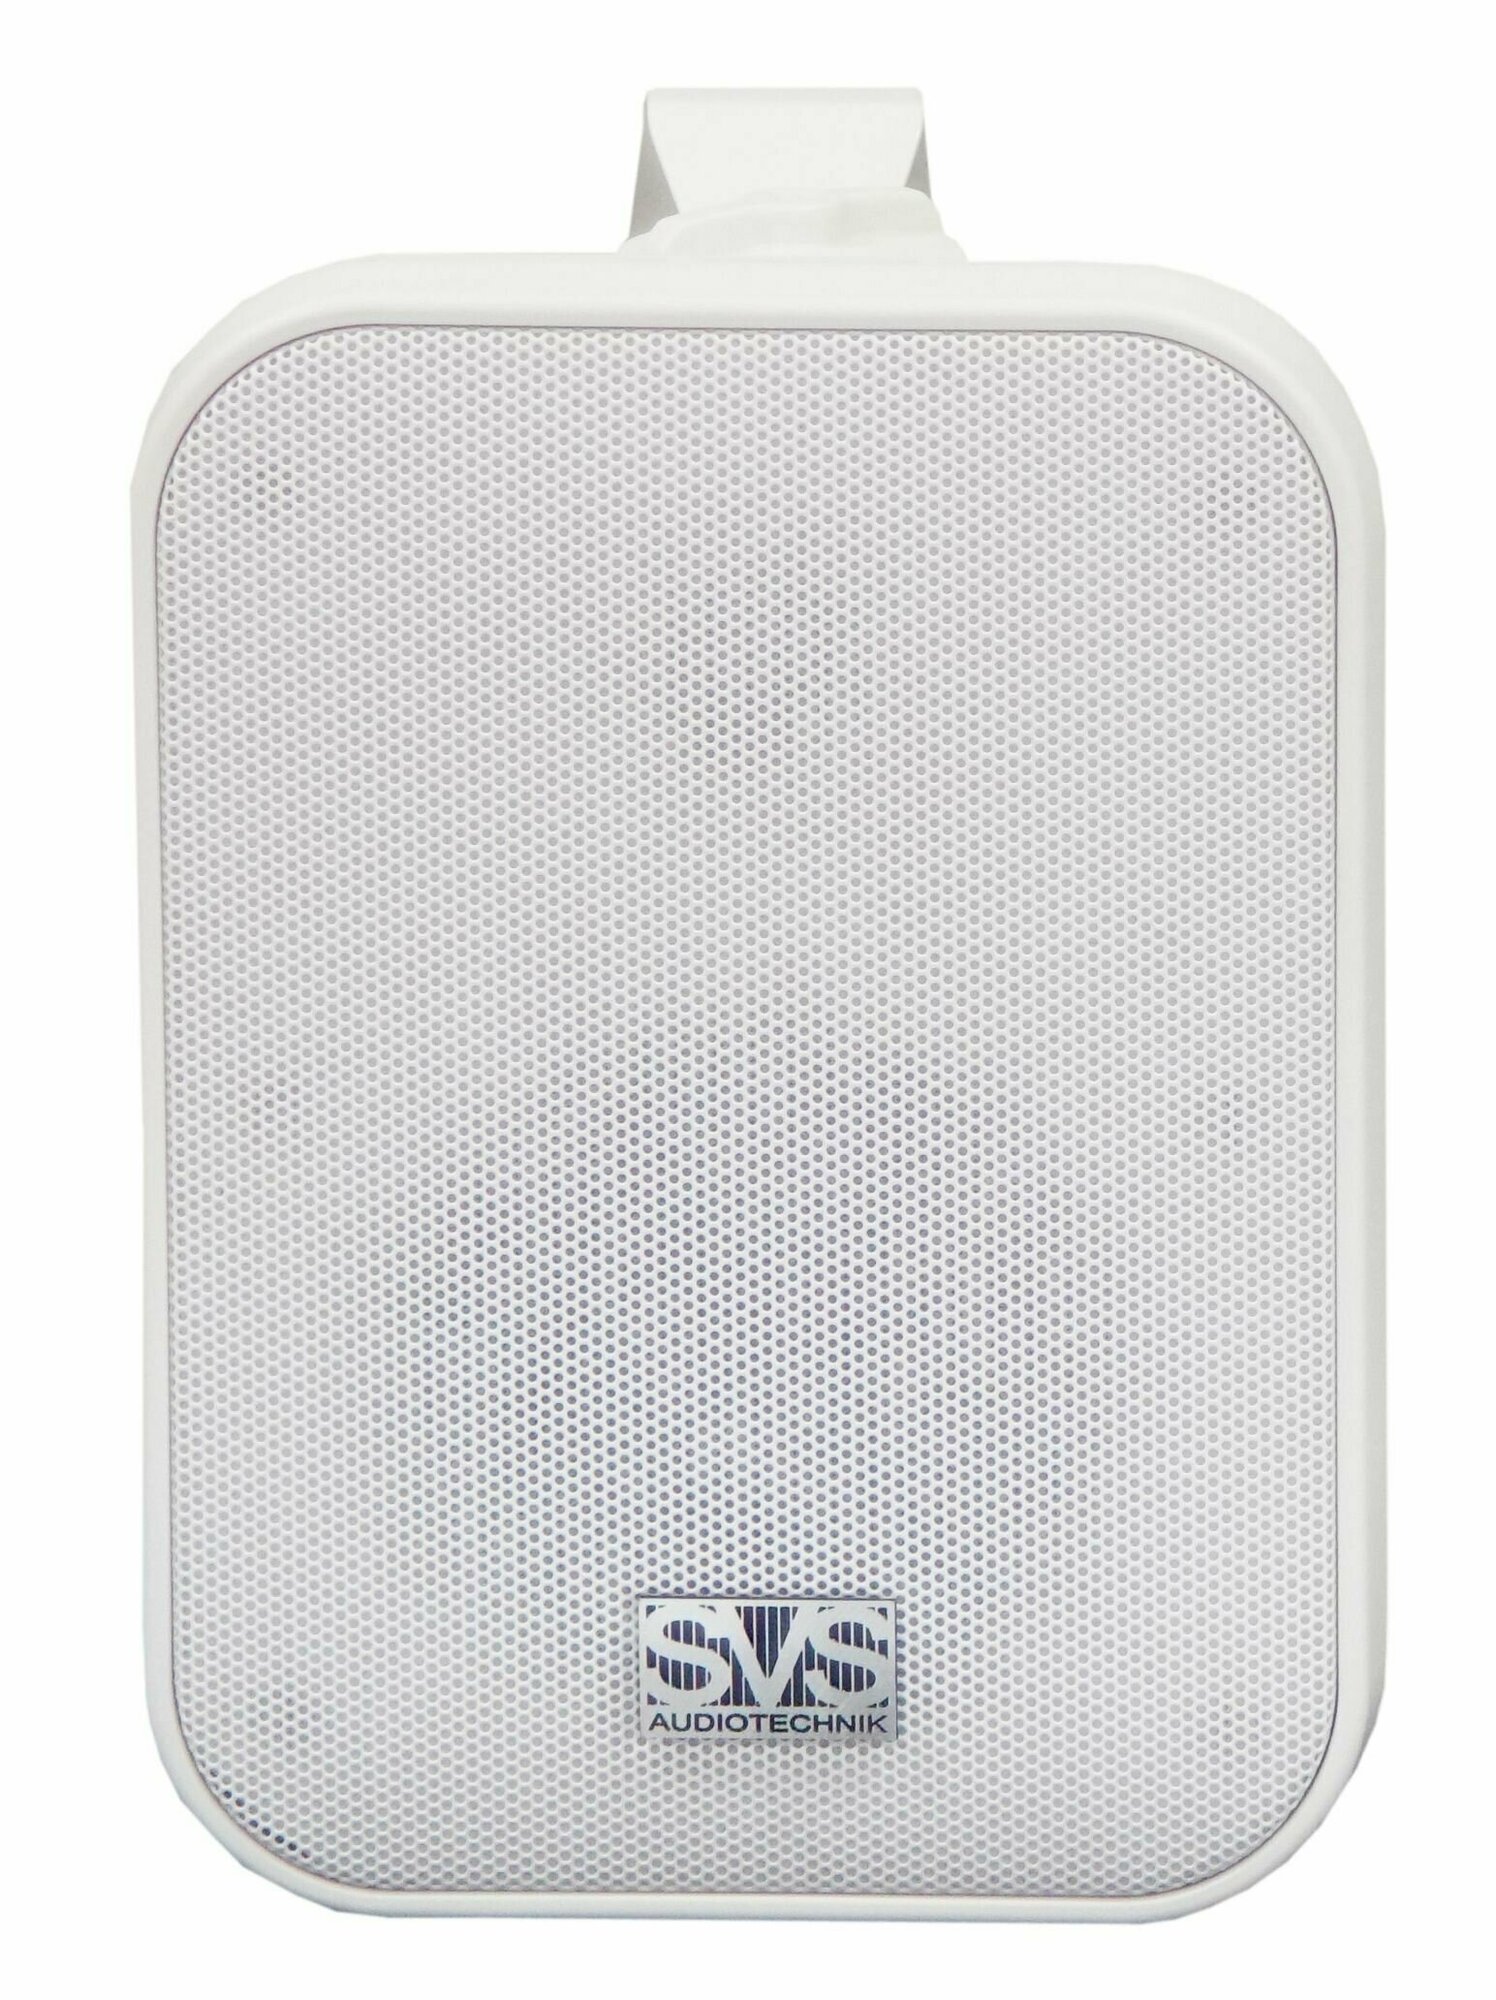 Громкоговоритель настенный SVS Audiotechnik WSP-40 White динамик 4", драйвер 1", 40Вт (RMS), 8 Ом